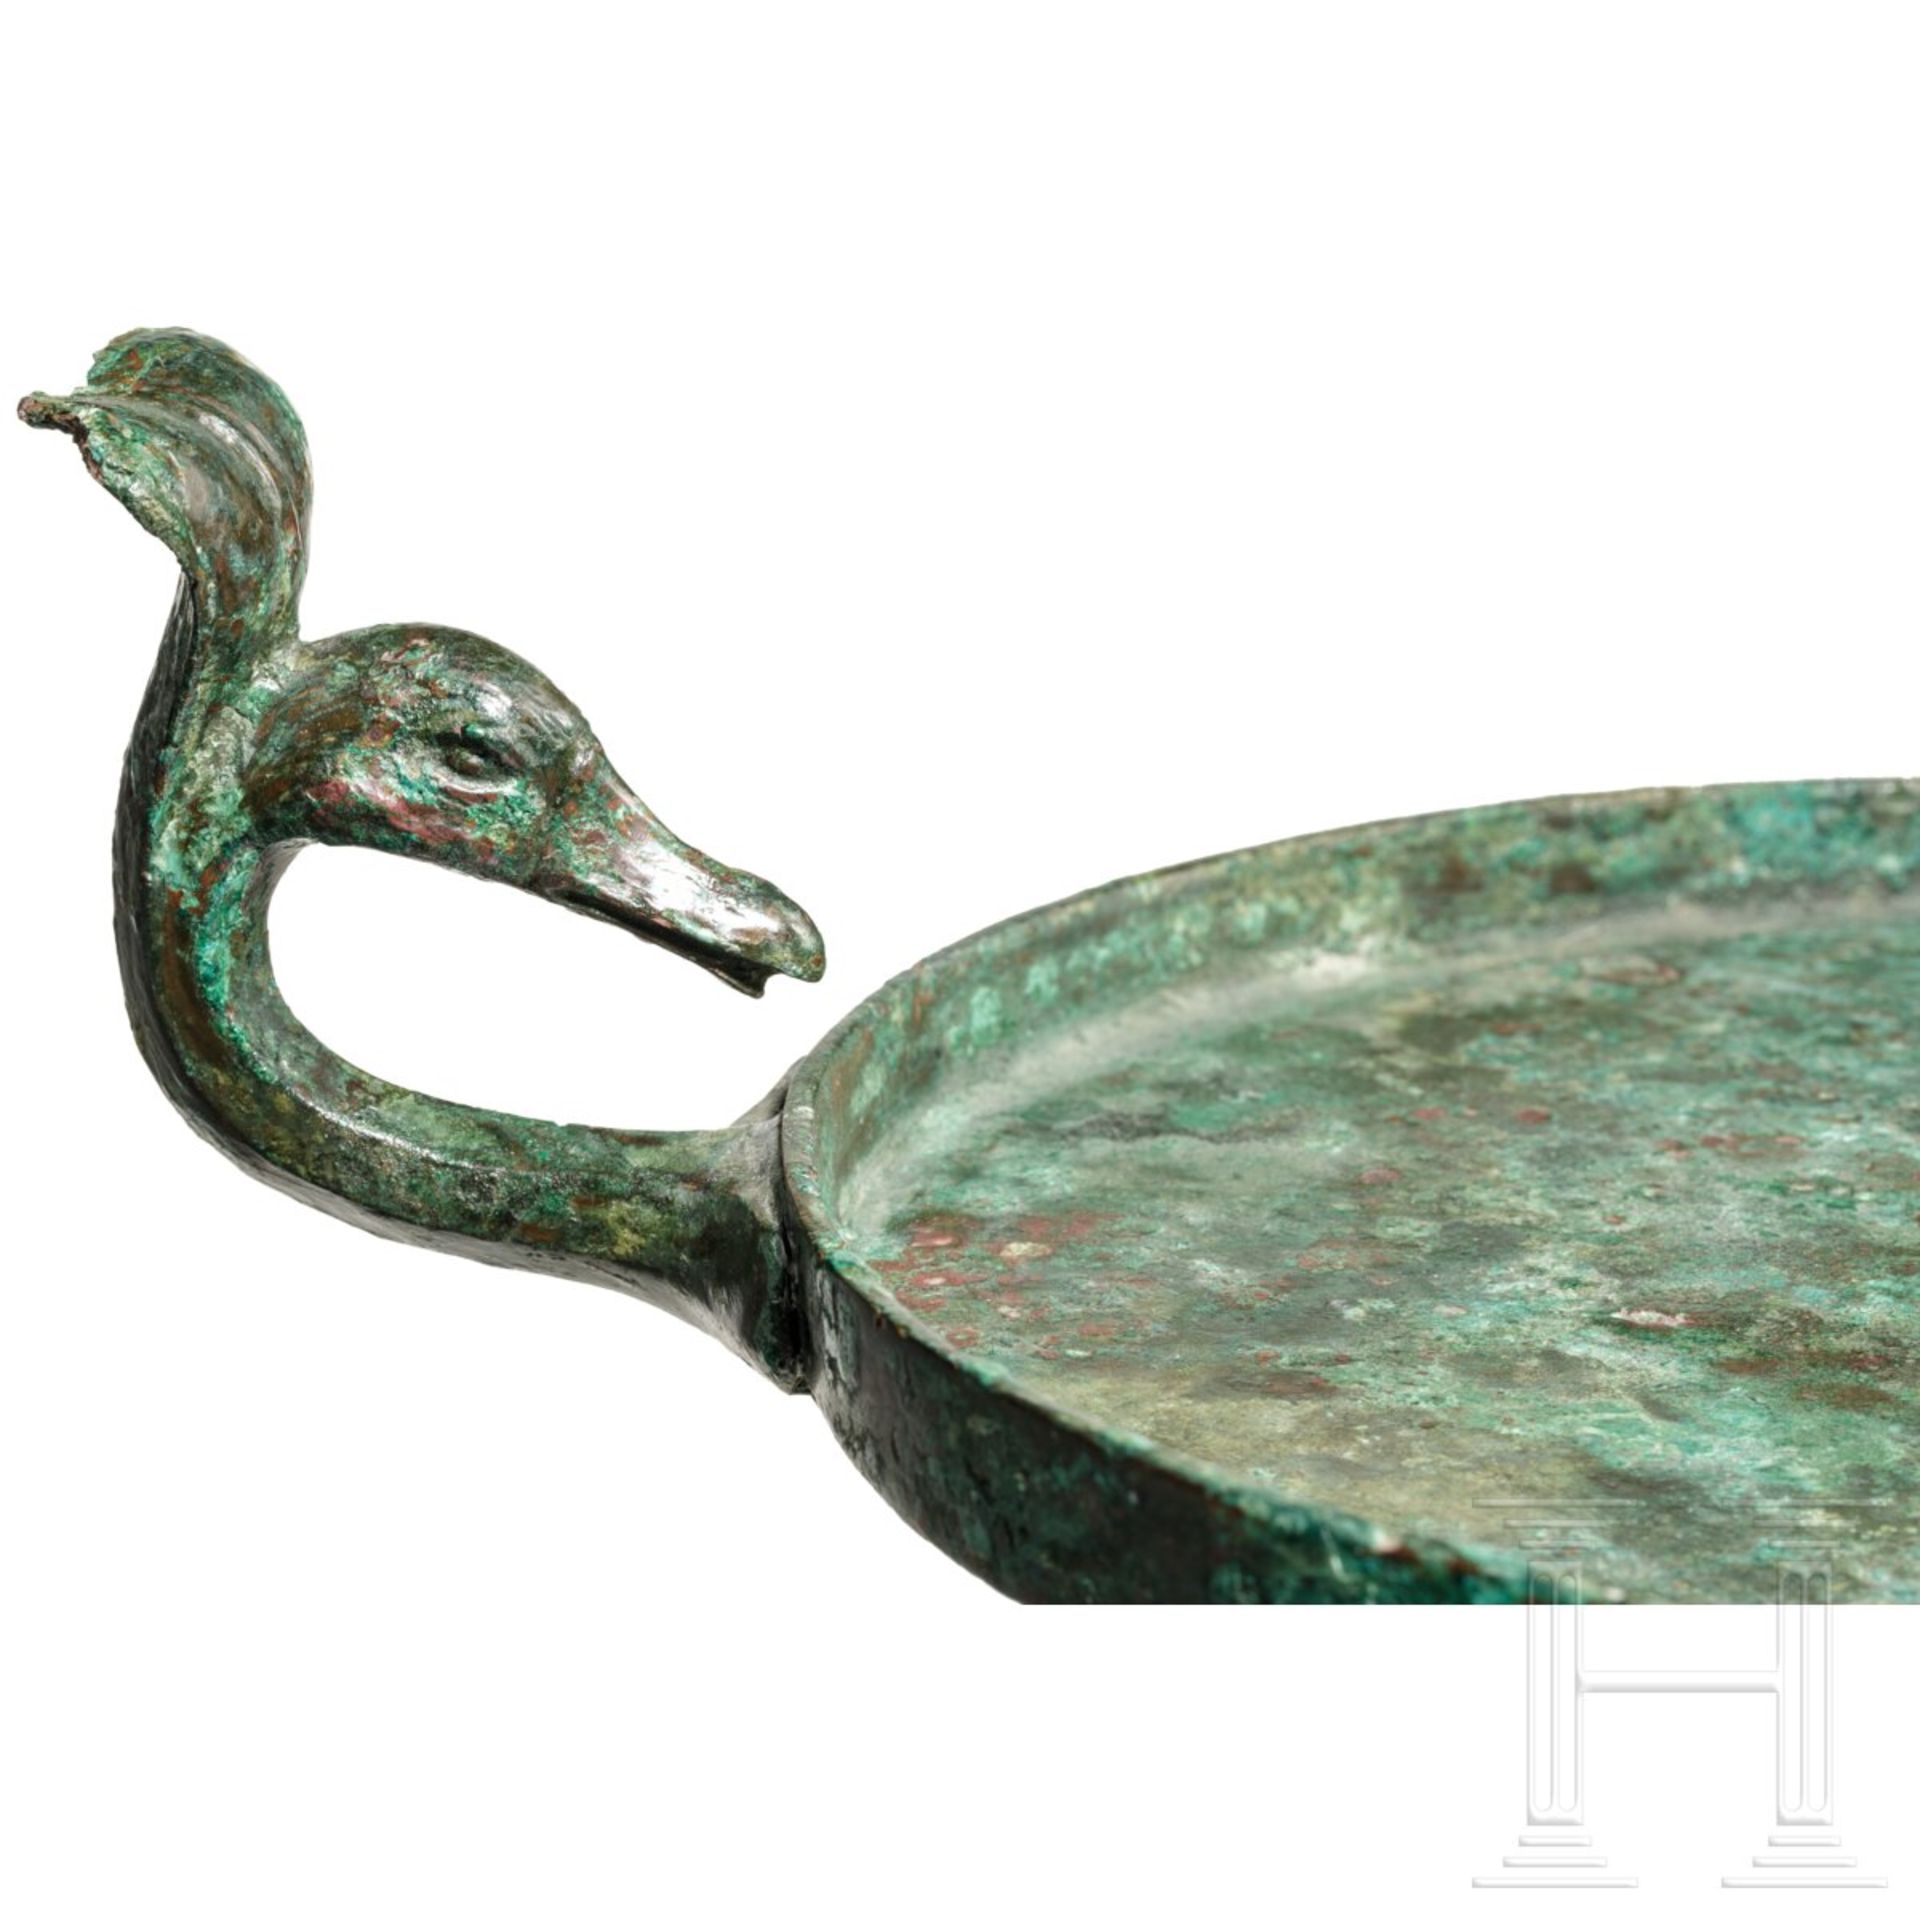 Bronzewerkzeug eines Barbiers, römisch, 2. Jhdt. n. Chr. - Bild 5 aus 5